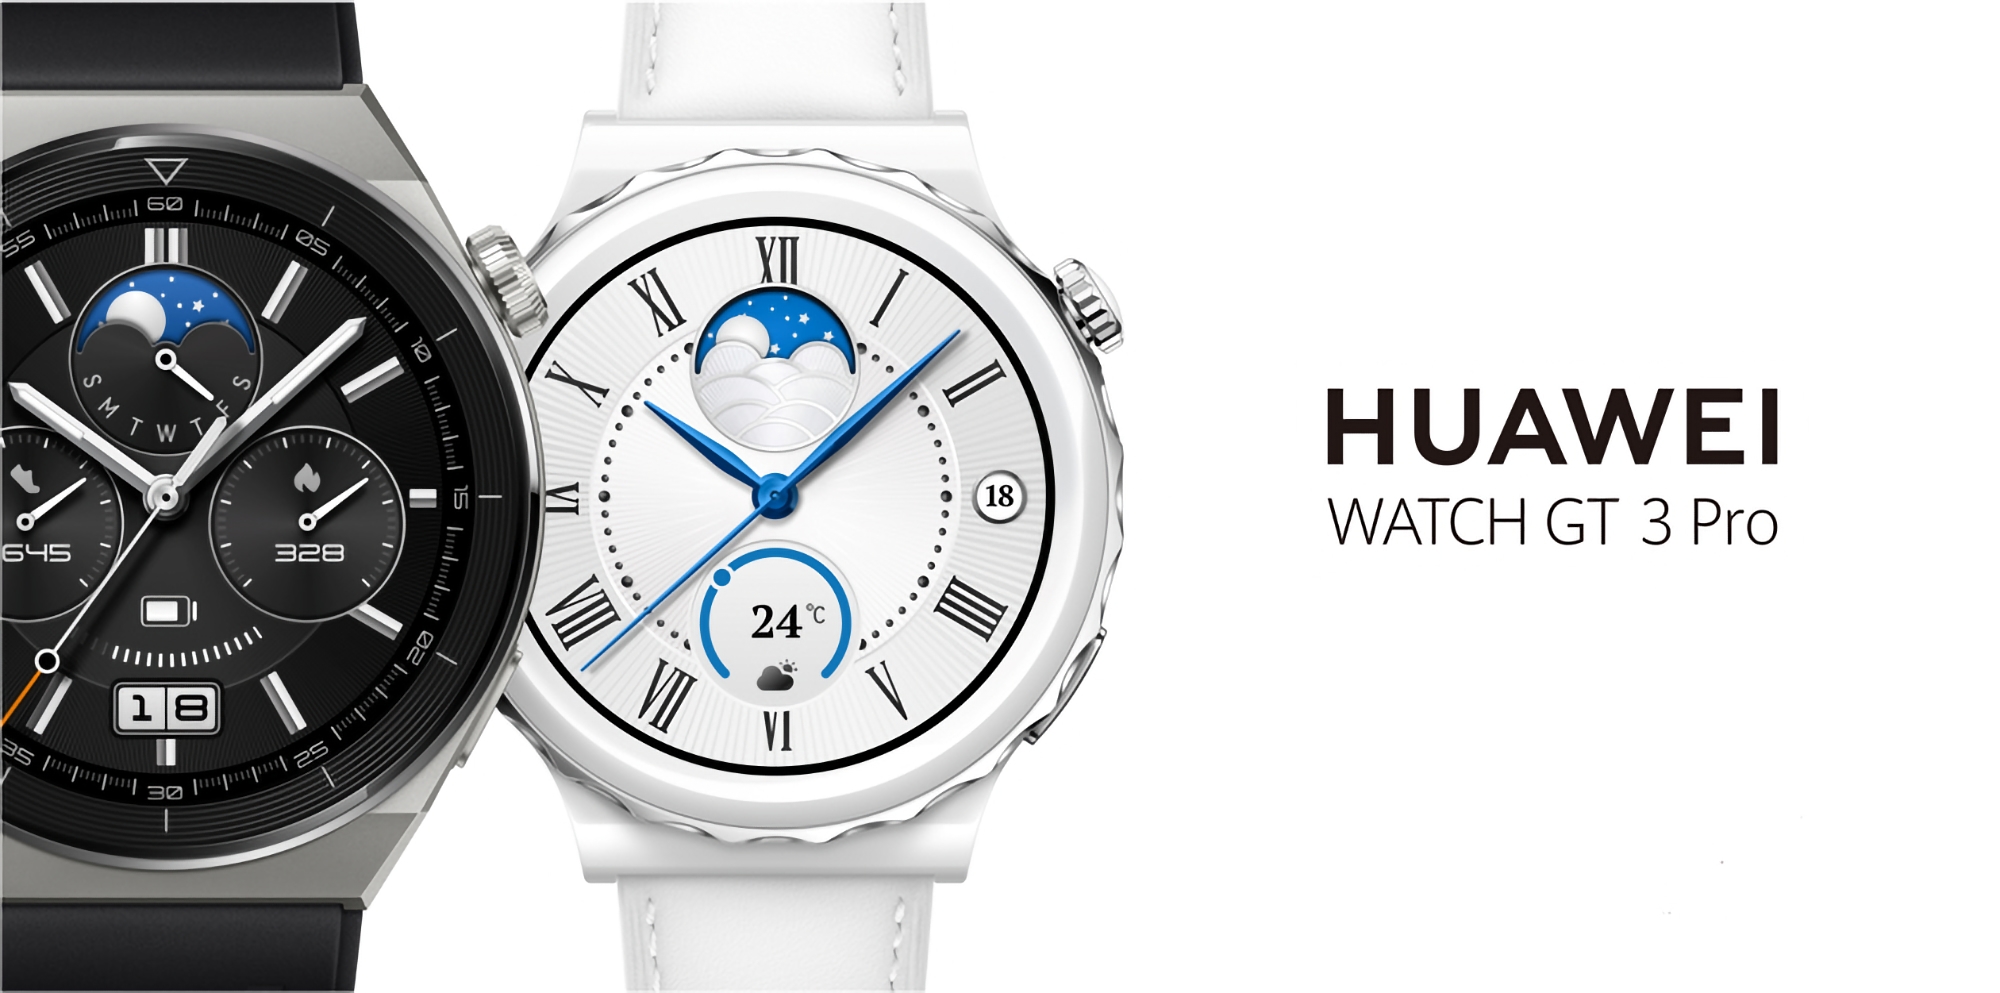 Gli utenti globali di Huawei Watch GT 3 Pro hanno iniziato a ricevere l'aggiornamento HarmonyOS 4